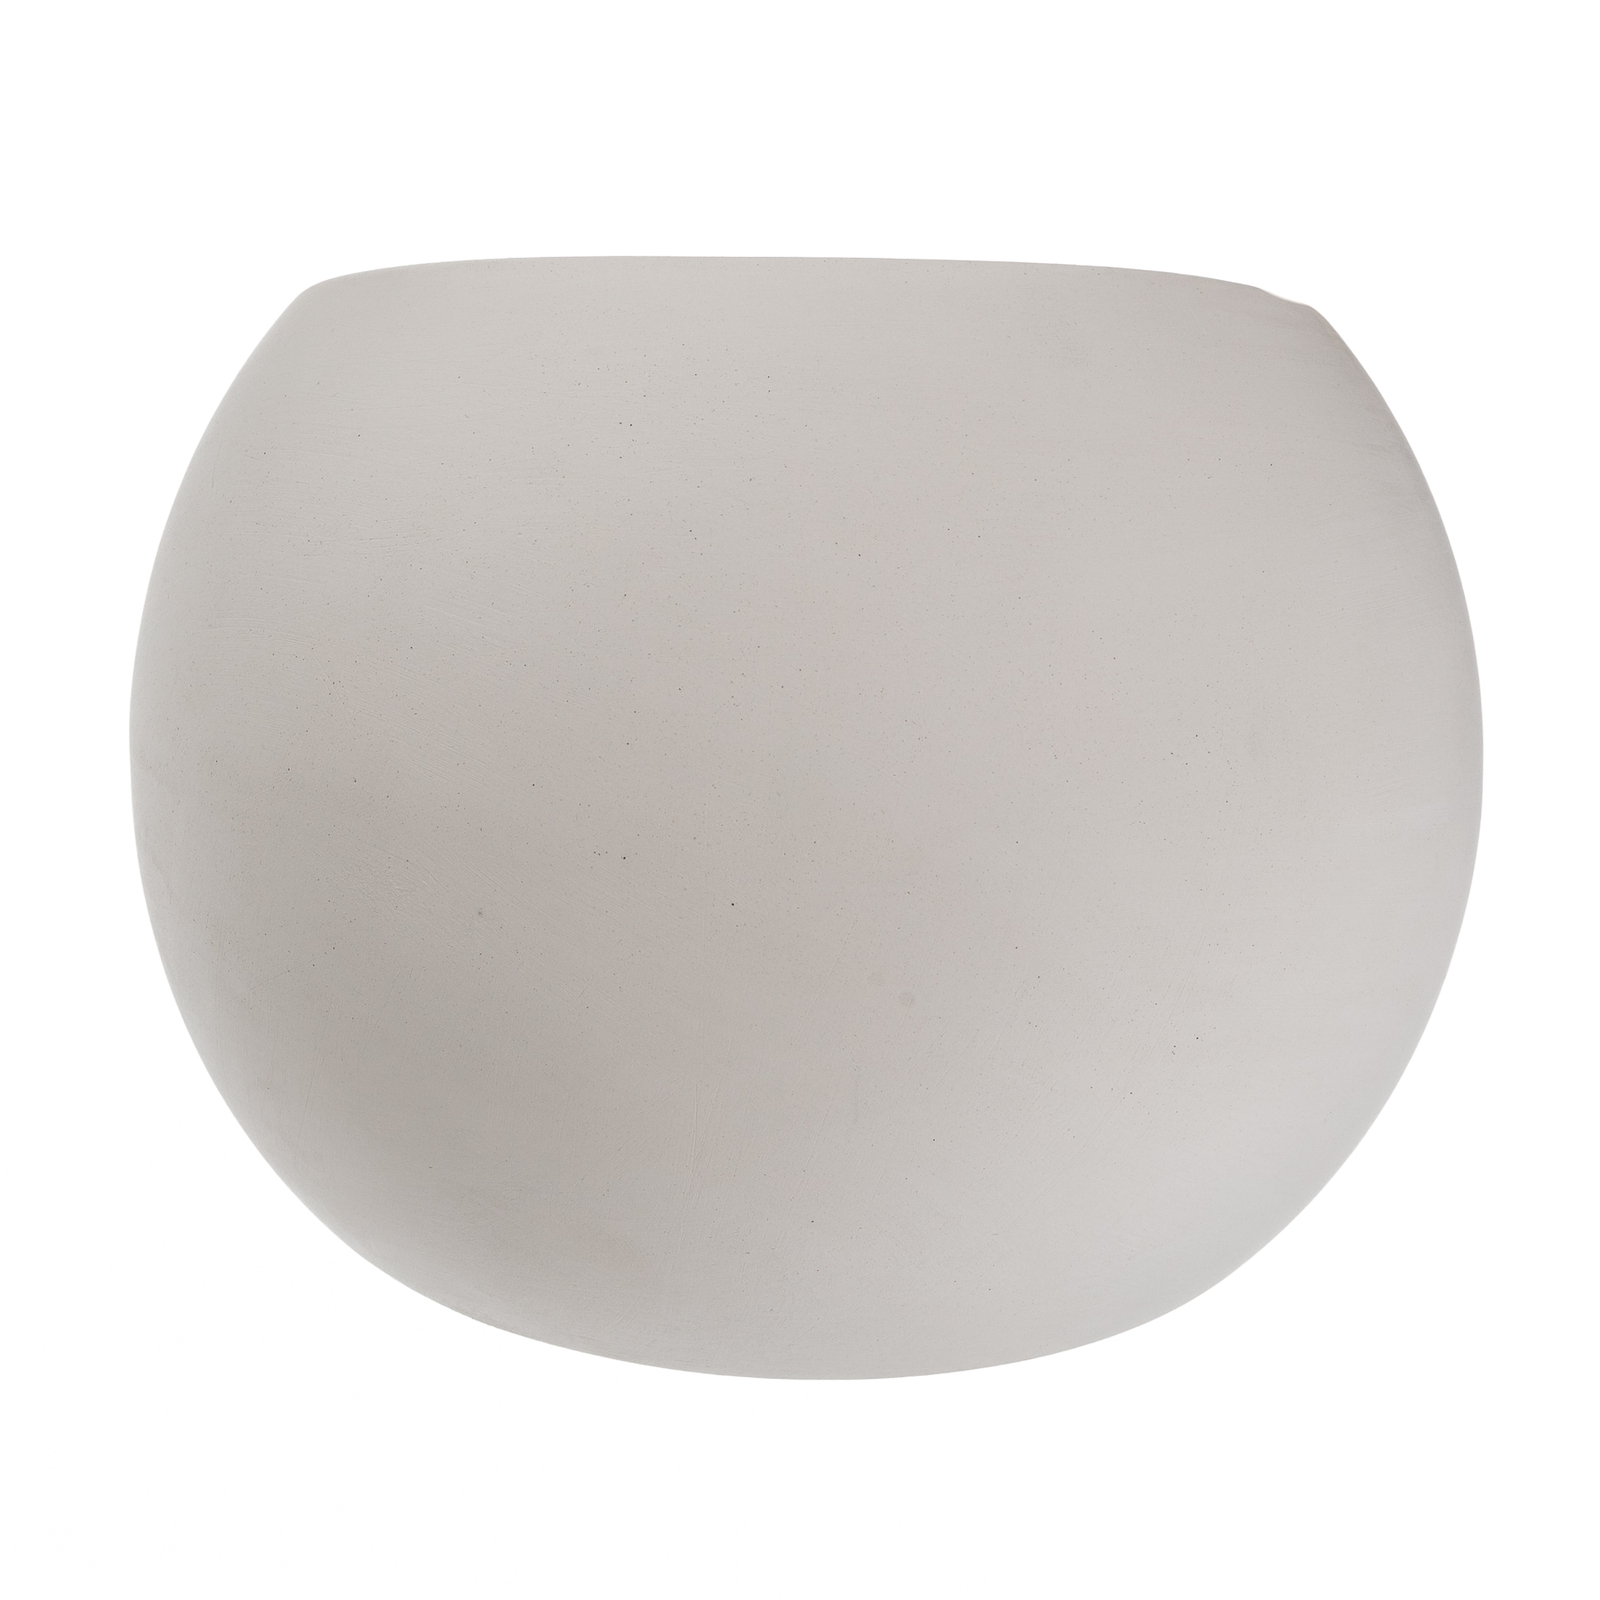 Wandleuchte Bullet up/down aus Keramik in Weiß